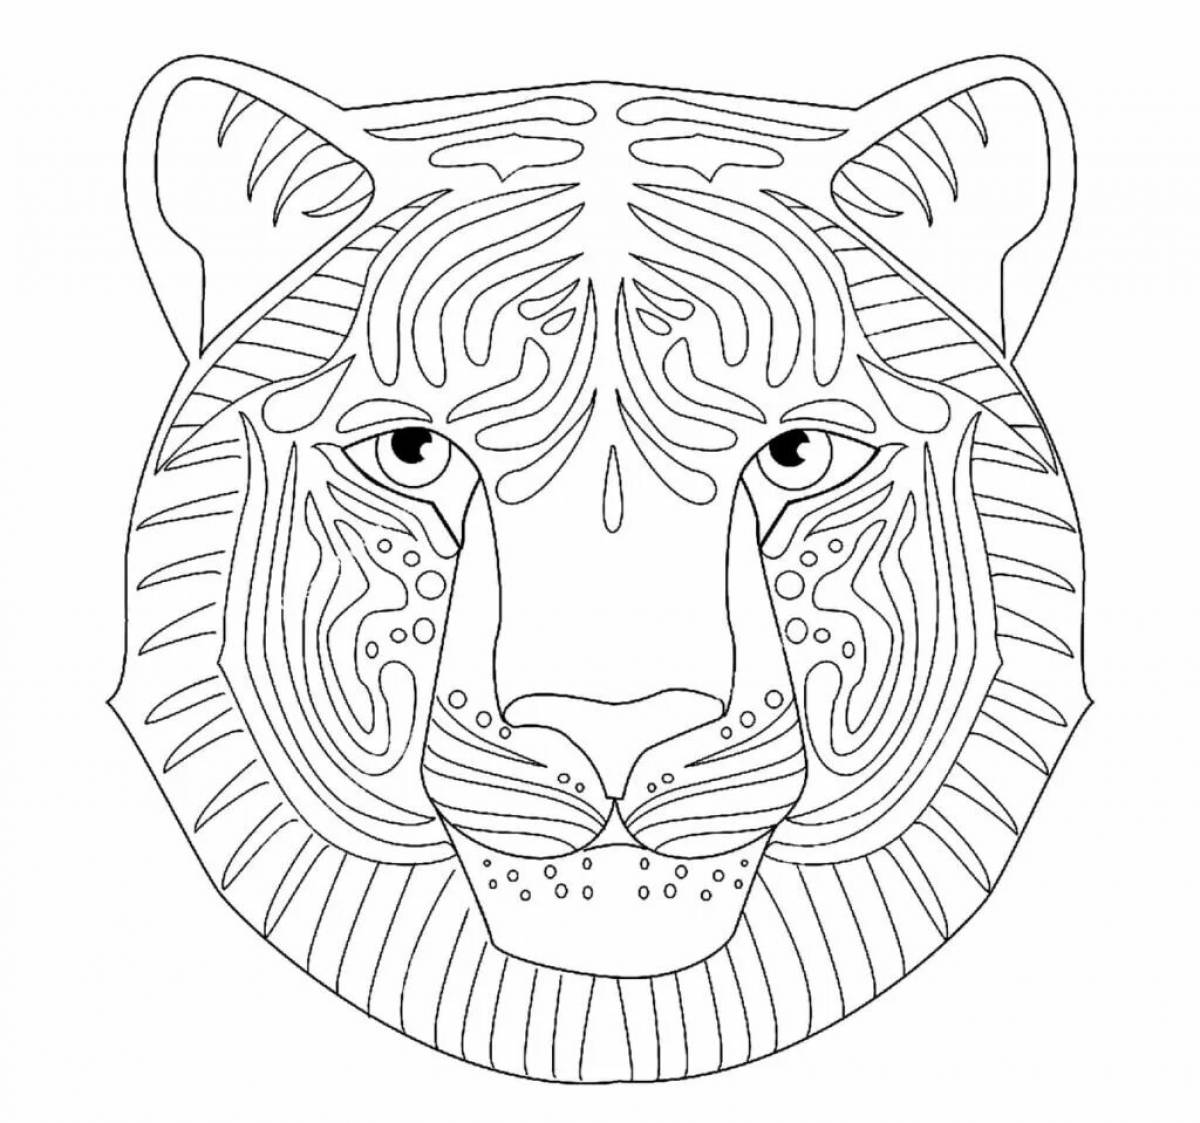 Tiger mask #2